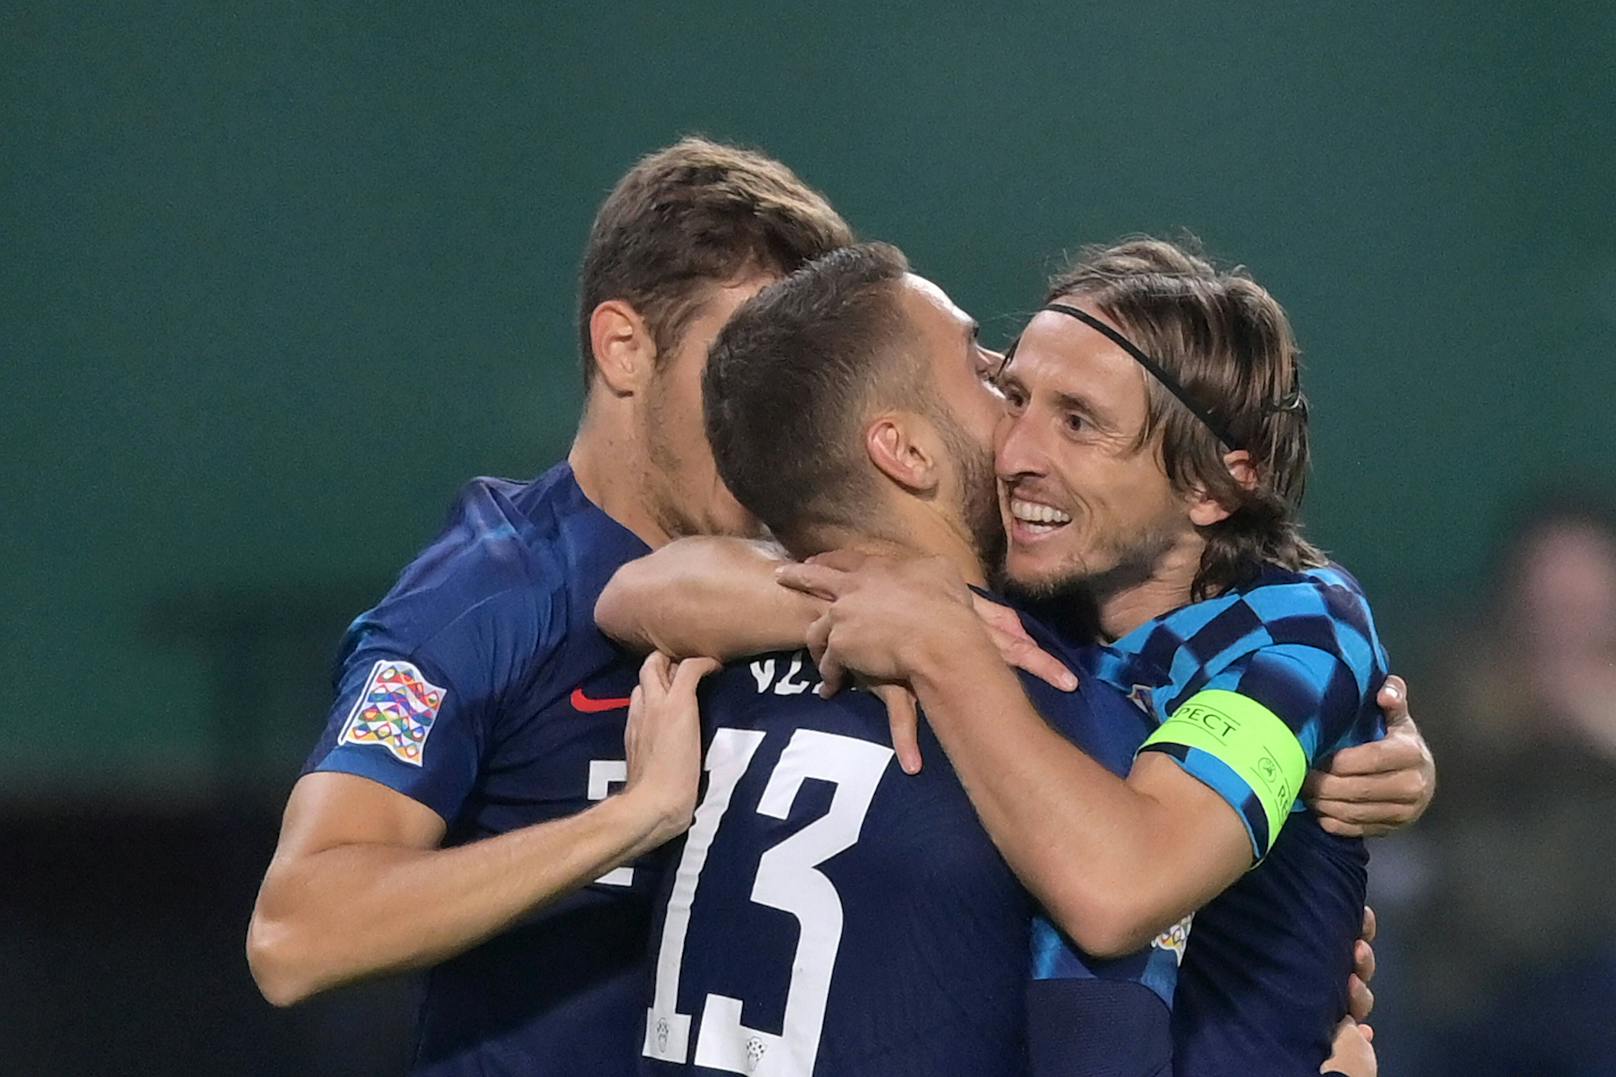 Kroatien fiel nach dem verlorenen WM-Finale zwischenzeitlich in ein Loch. Inzwischen ist der Durchhänger längst überwunden. In den letzten 15 Auftritten verloren Luka Modric und Co. nur einmal – beim 0:3 daheim gegen Österreich.